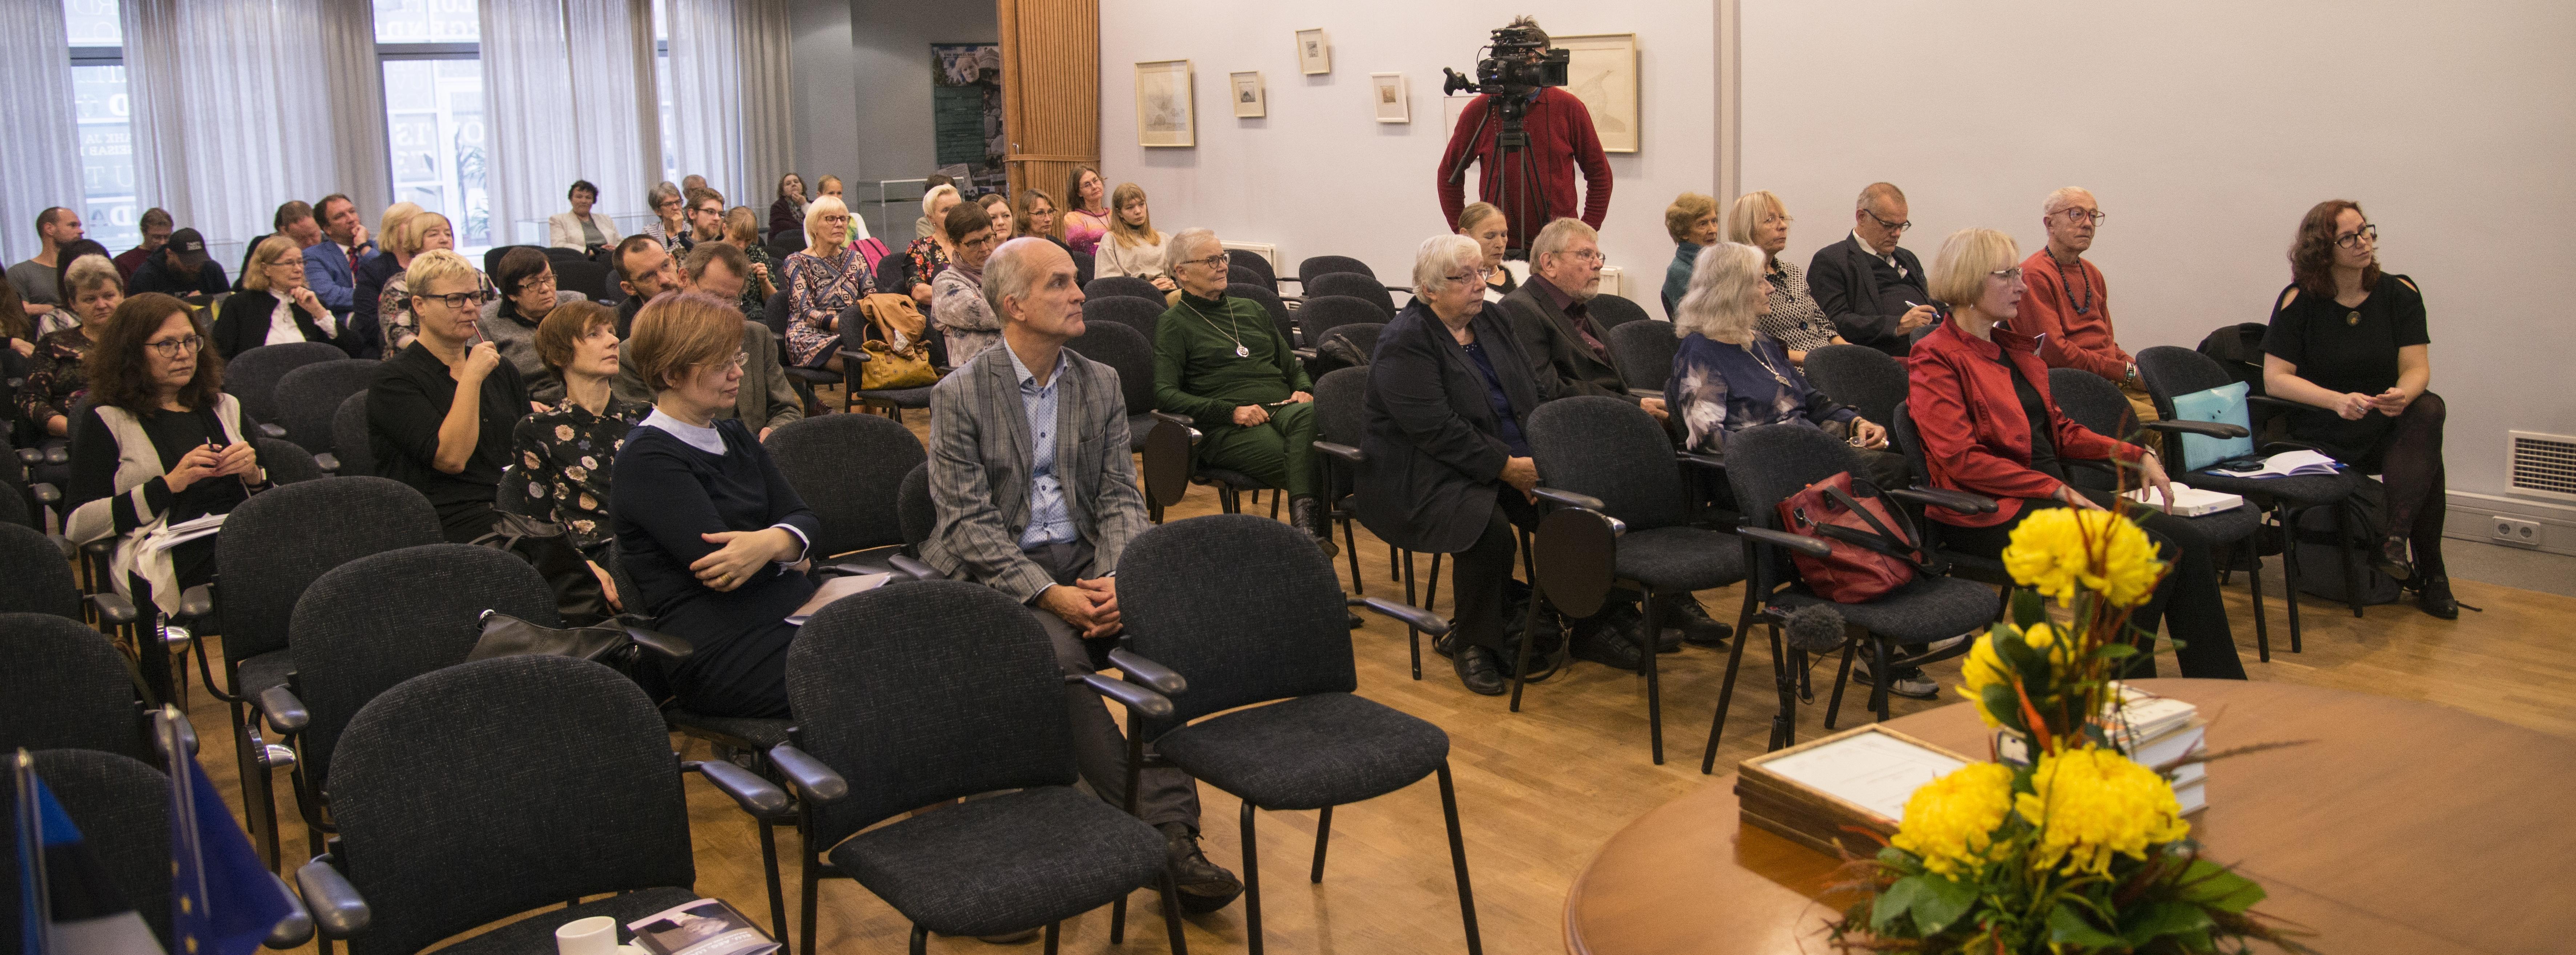 Ene Mihkelsoni loomingule pühendatud konverents "Elu. Aeg. Lugu", 18.10.2019. Foto: Alar Madisson